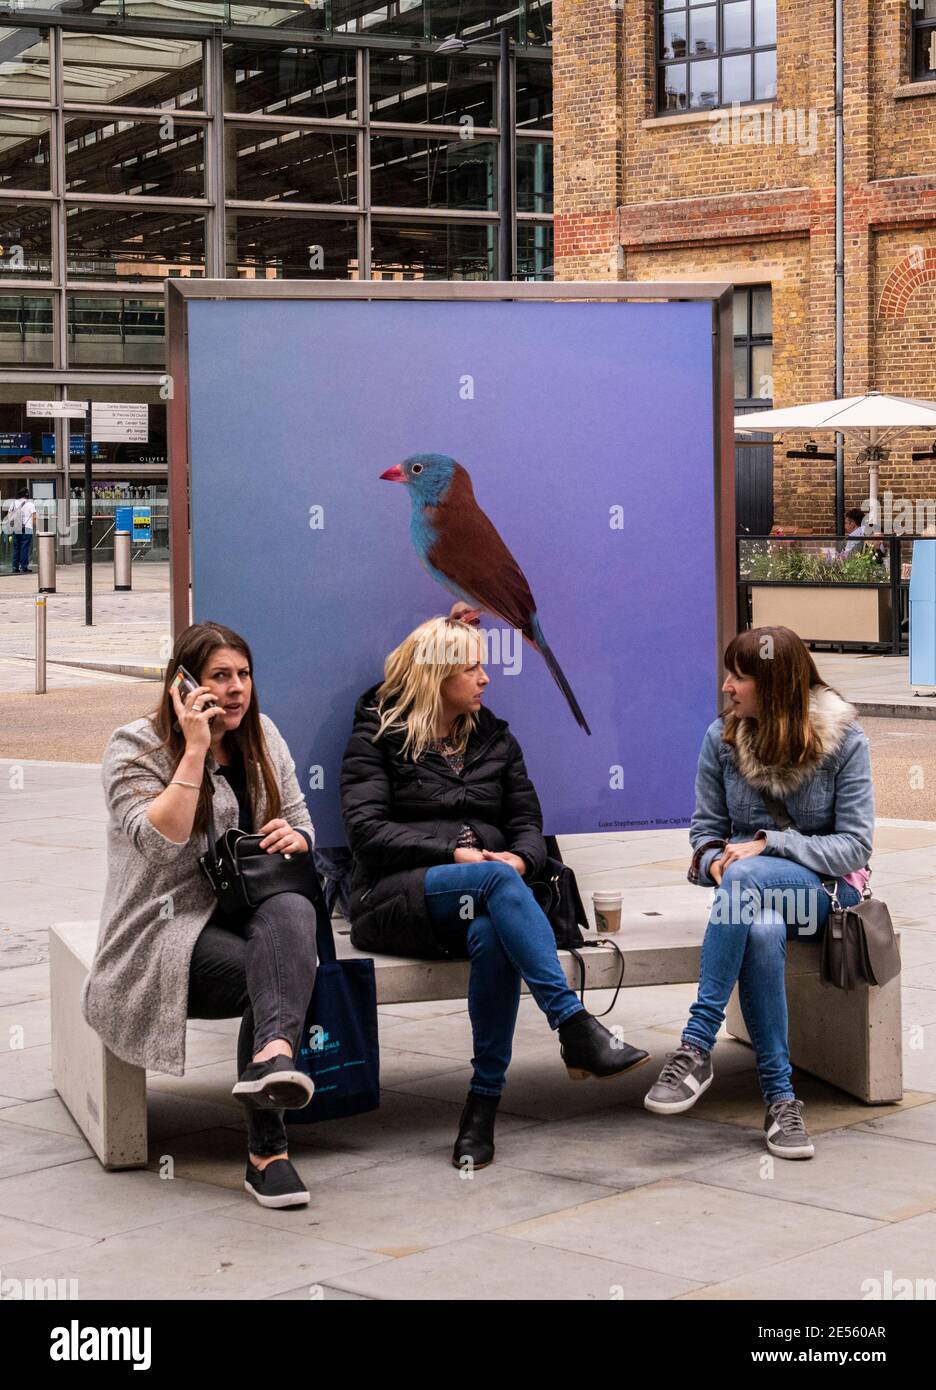 Tre donne che si siedono su una panchina come un uccello su un poster dietro di loro guarda come se fosse appollaiato sulla testa di una donna. Foto Stock